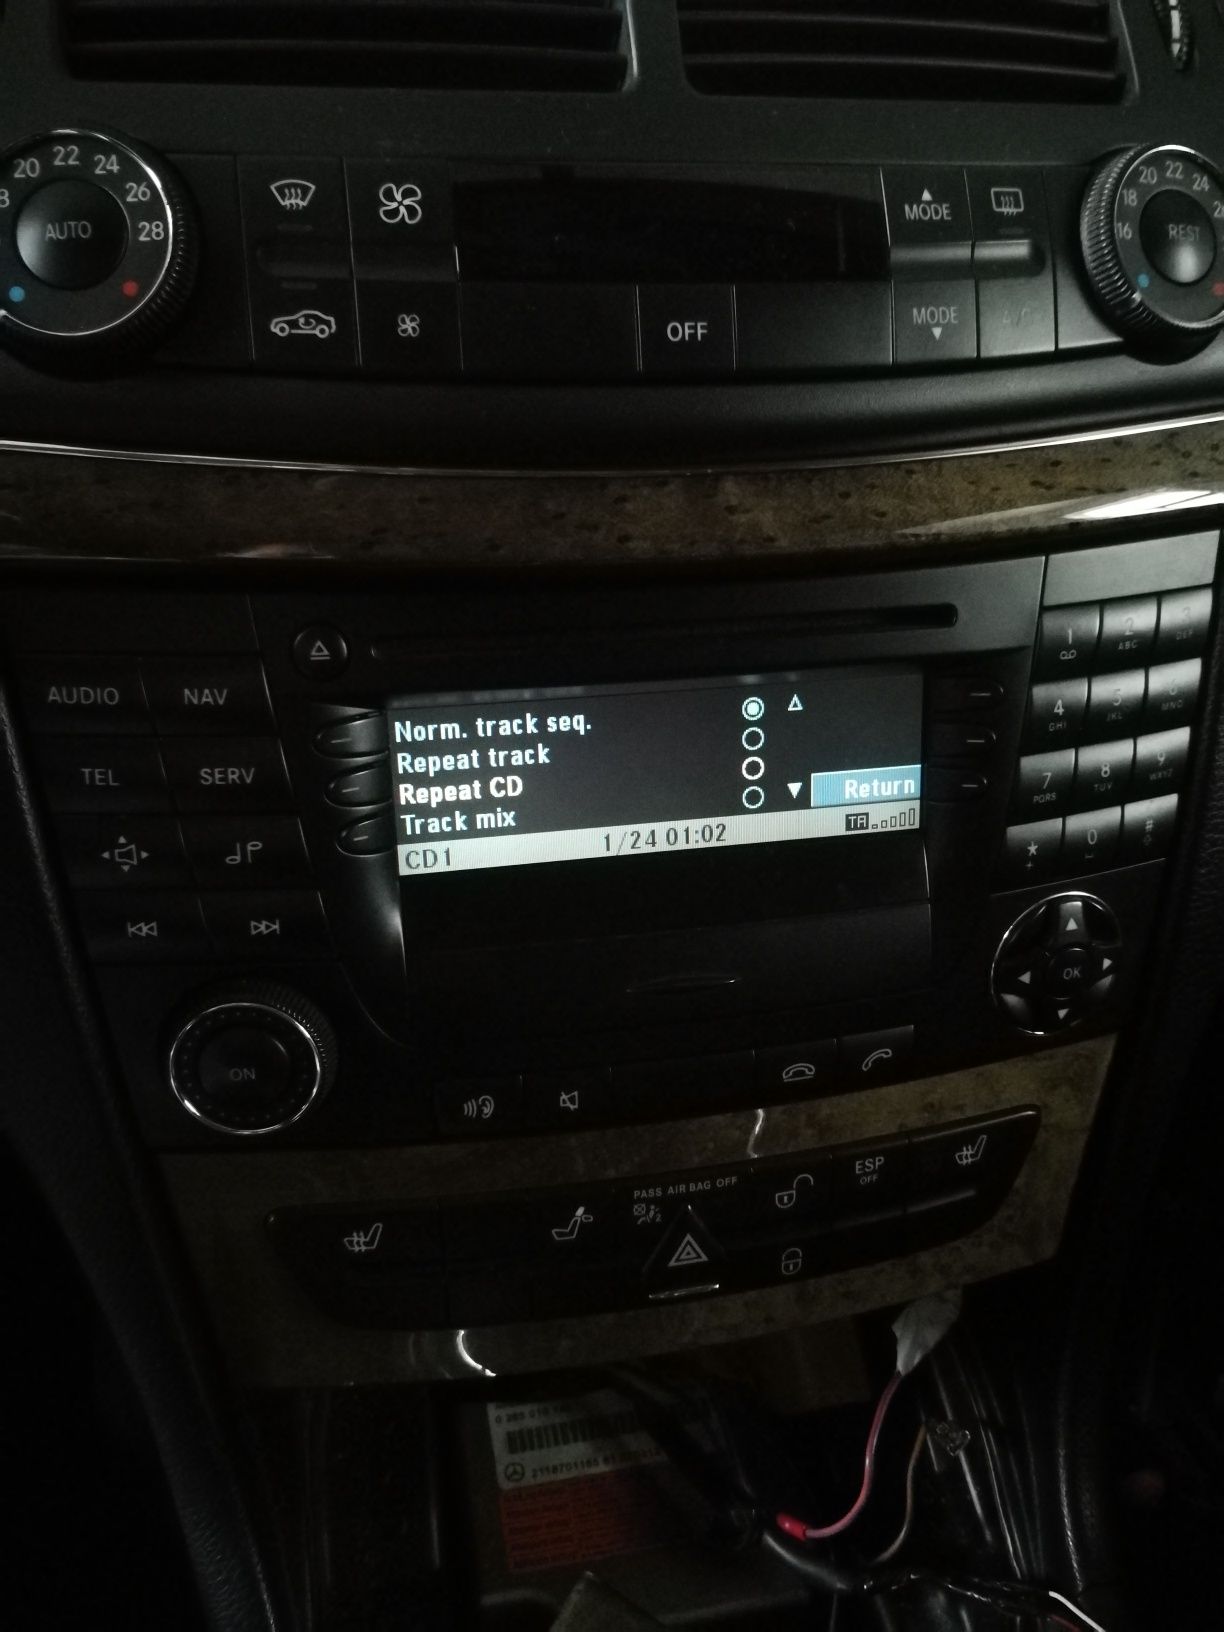 Mercedes NTG1 Audio 50 APS Sat Nav